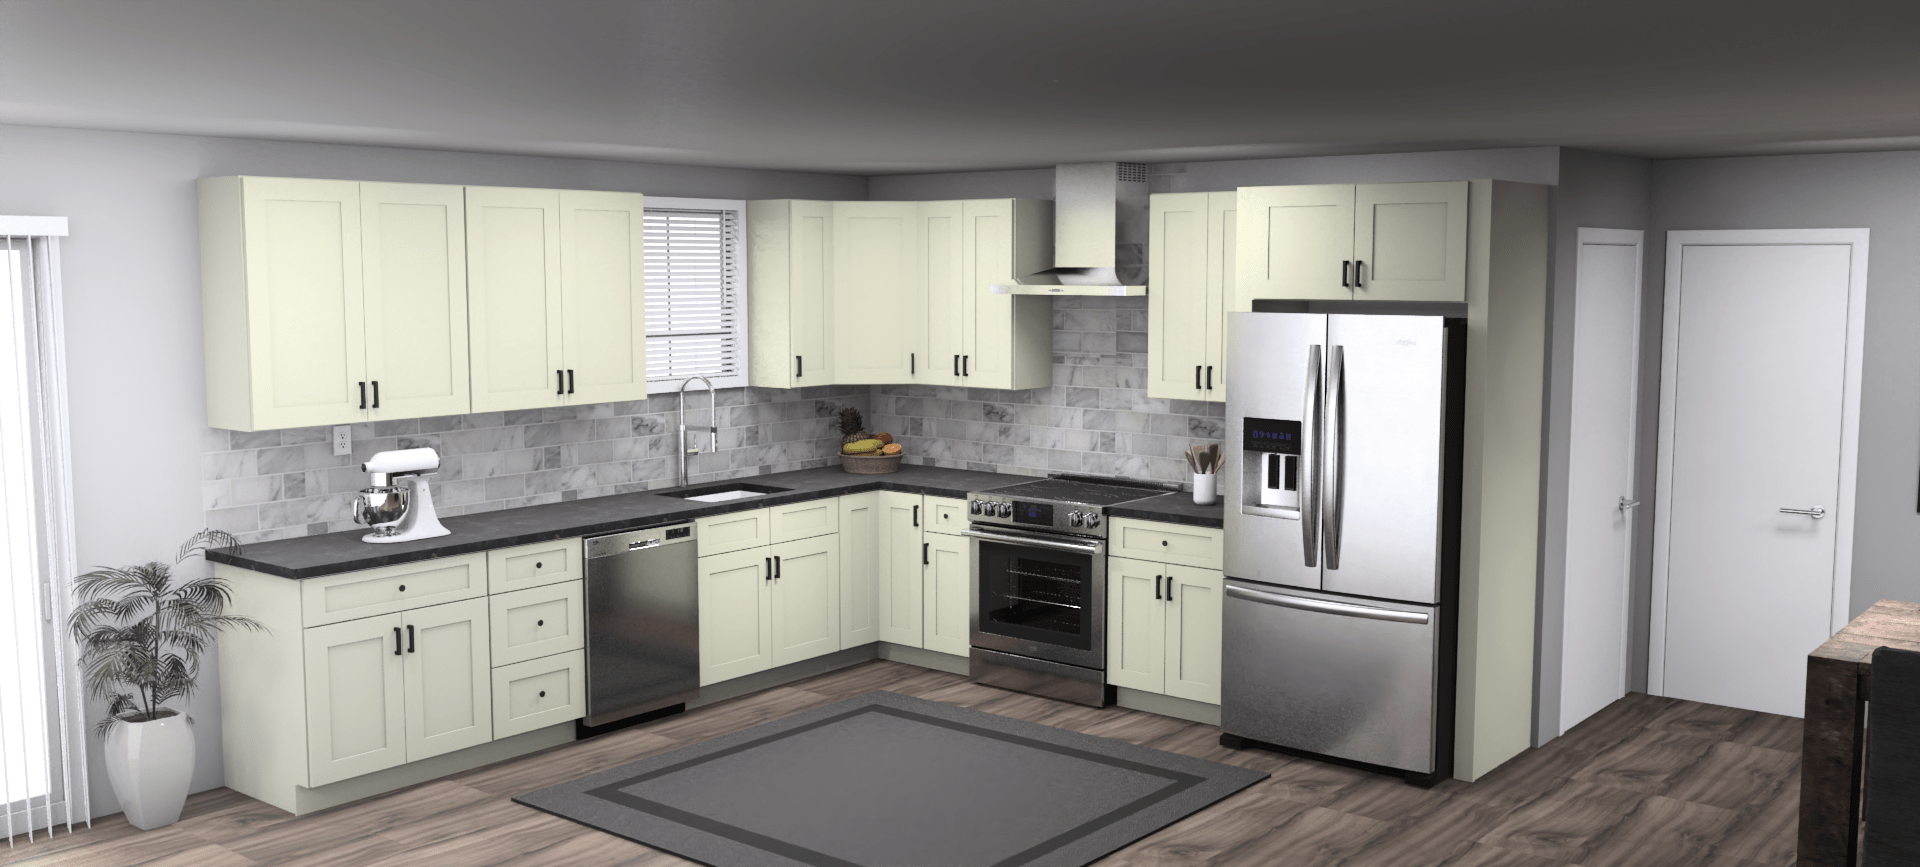 Fabuwood Allure Galaxy Linen 12 x 12 L Shaped Kitchen Main Layout Photo